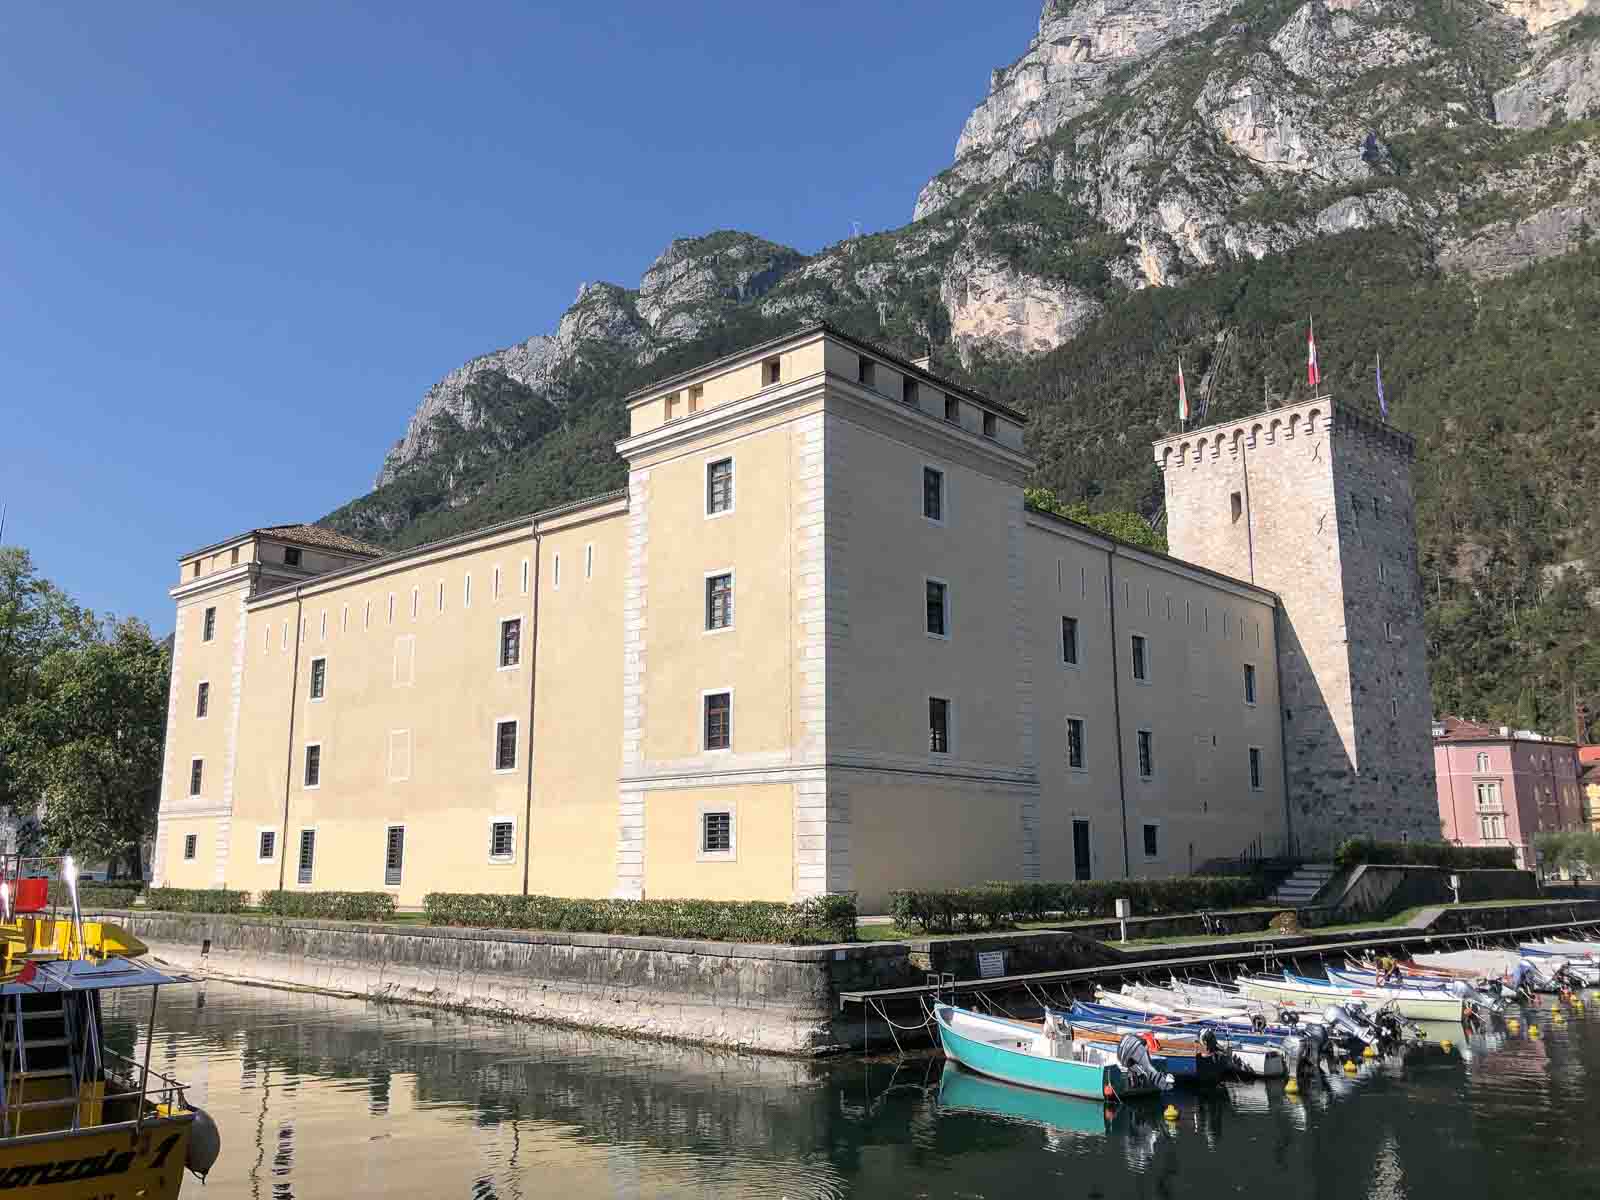 Festung Rocca mit MAG Museum - eine der wichtigsten Sehenswürdigkeiten im Garda Trentino